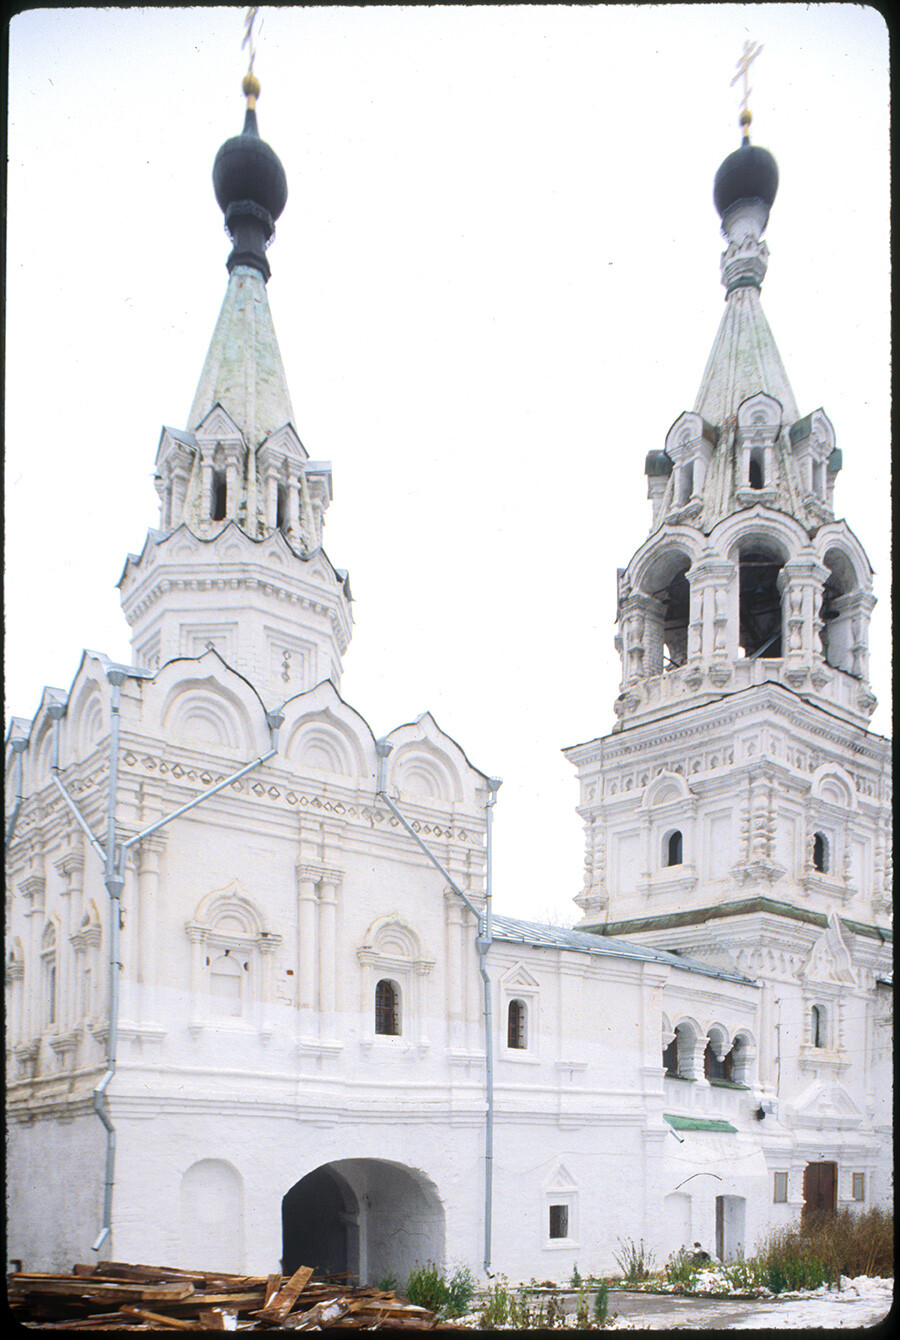 Convento della Trinità. Campanile e Chiesa dell’icona della Vergine di Kazan, vista sud-ovest. 26 ottobre 2001